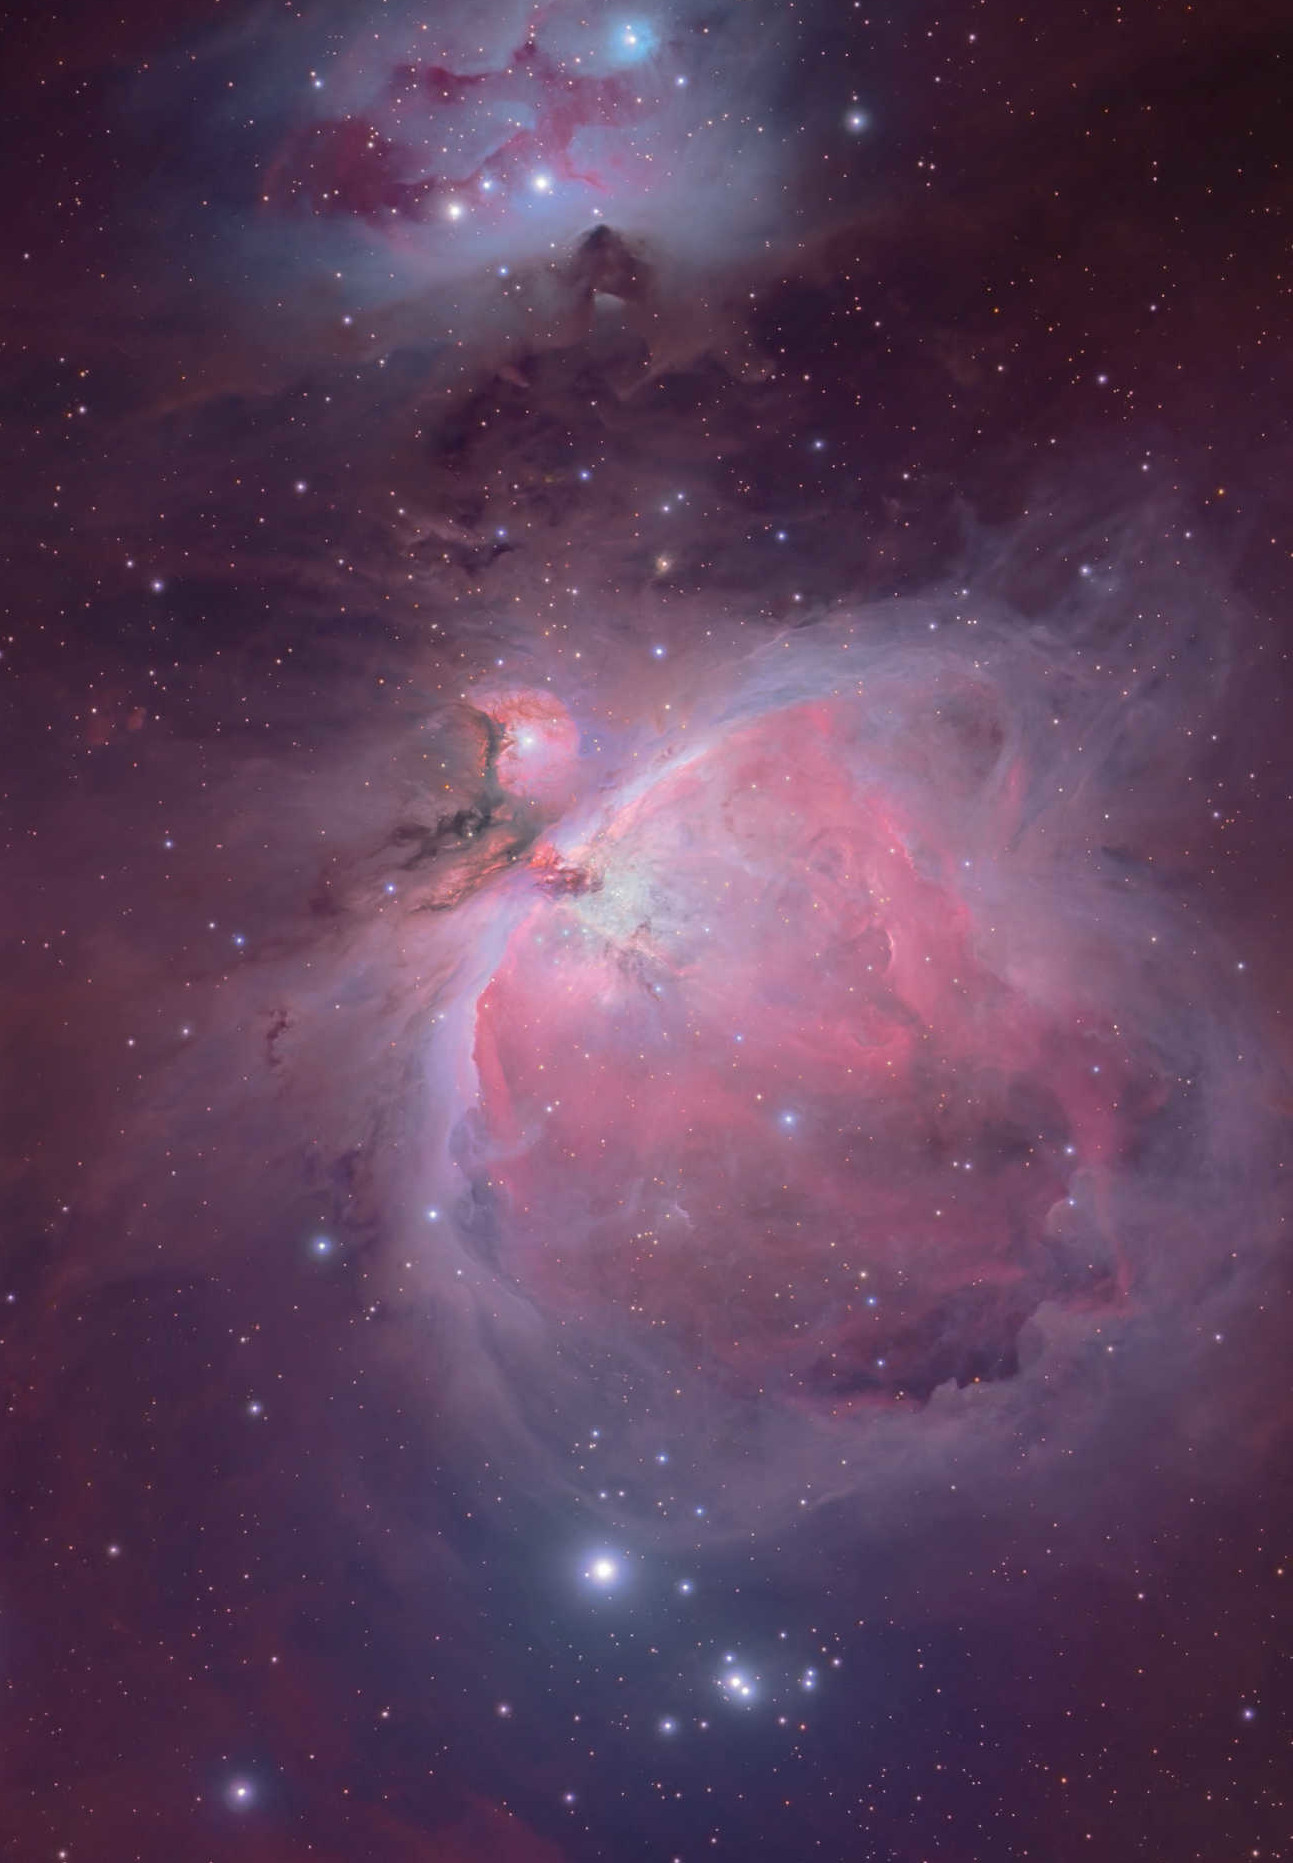 Die fantastischen Nebelwelten
des Orionnebels begeistern viele
Hobbyastronomen. Mario Weigand